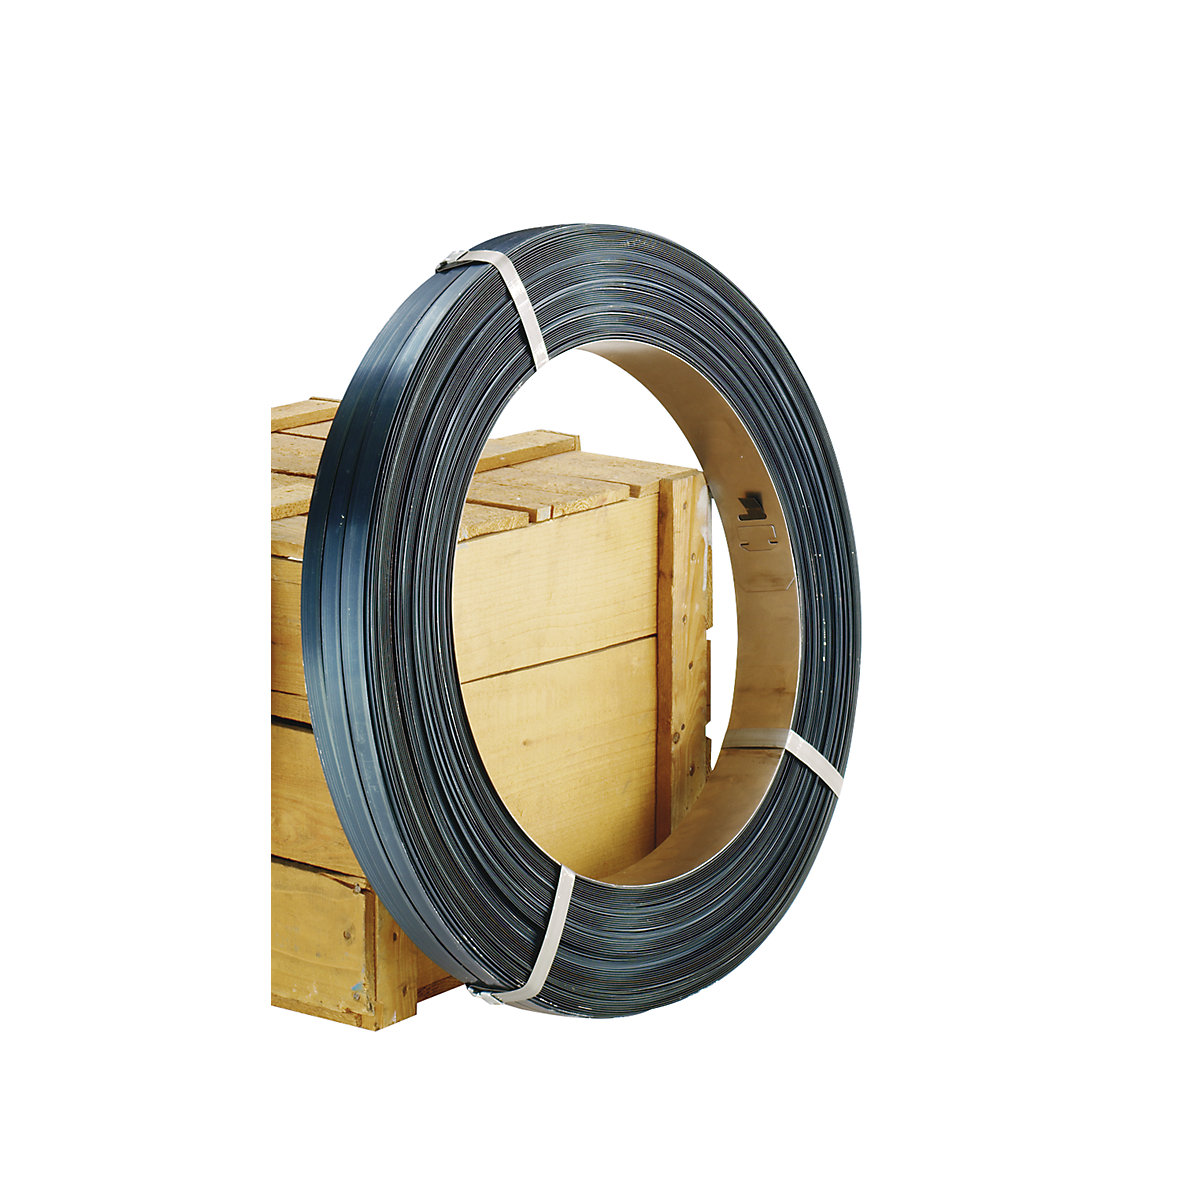 Čelična traka, za uređaj za odmotavanje trake, pakirni kolut, presvučen voskom i obojen u plavoj boji, širina trake 13 mm